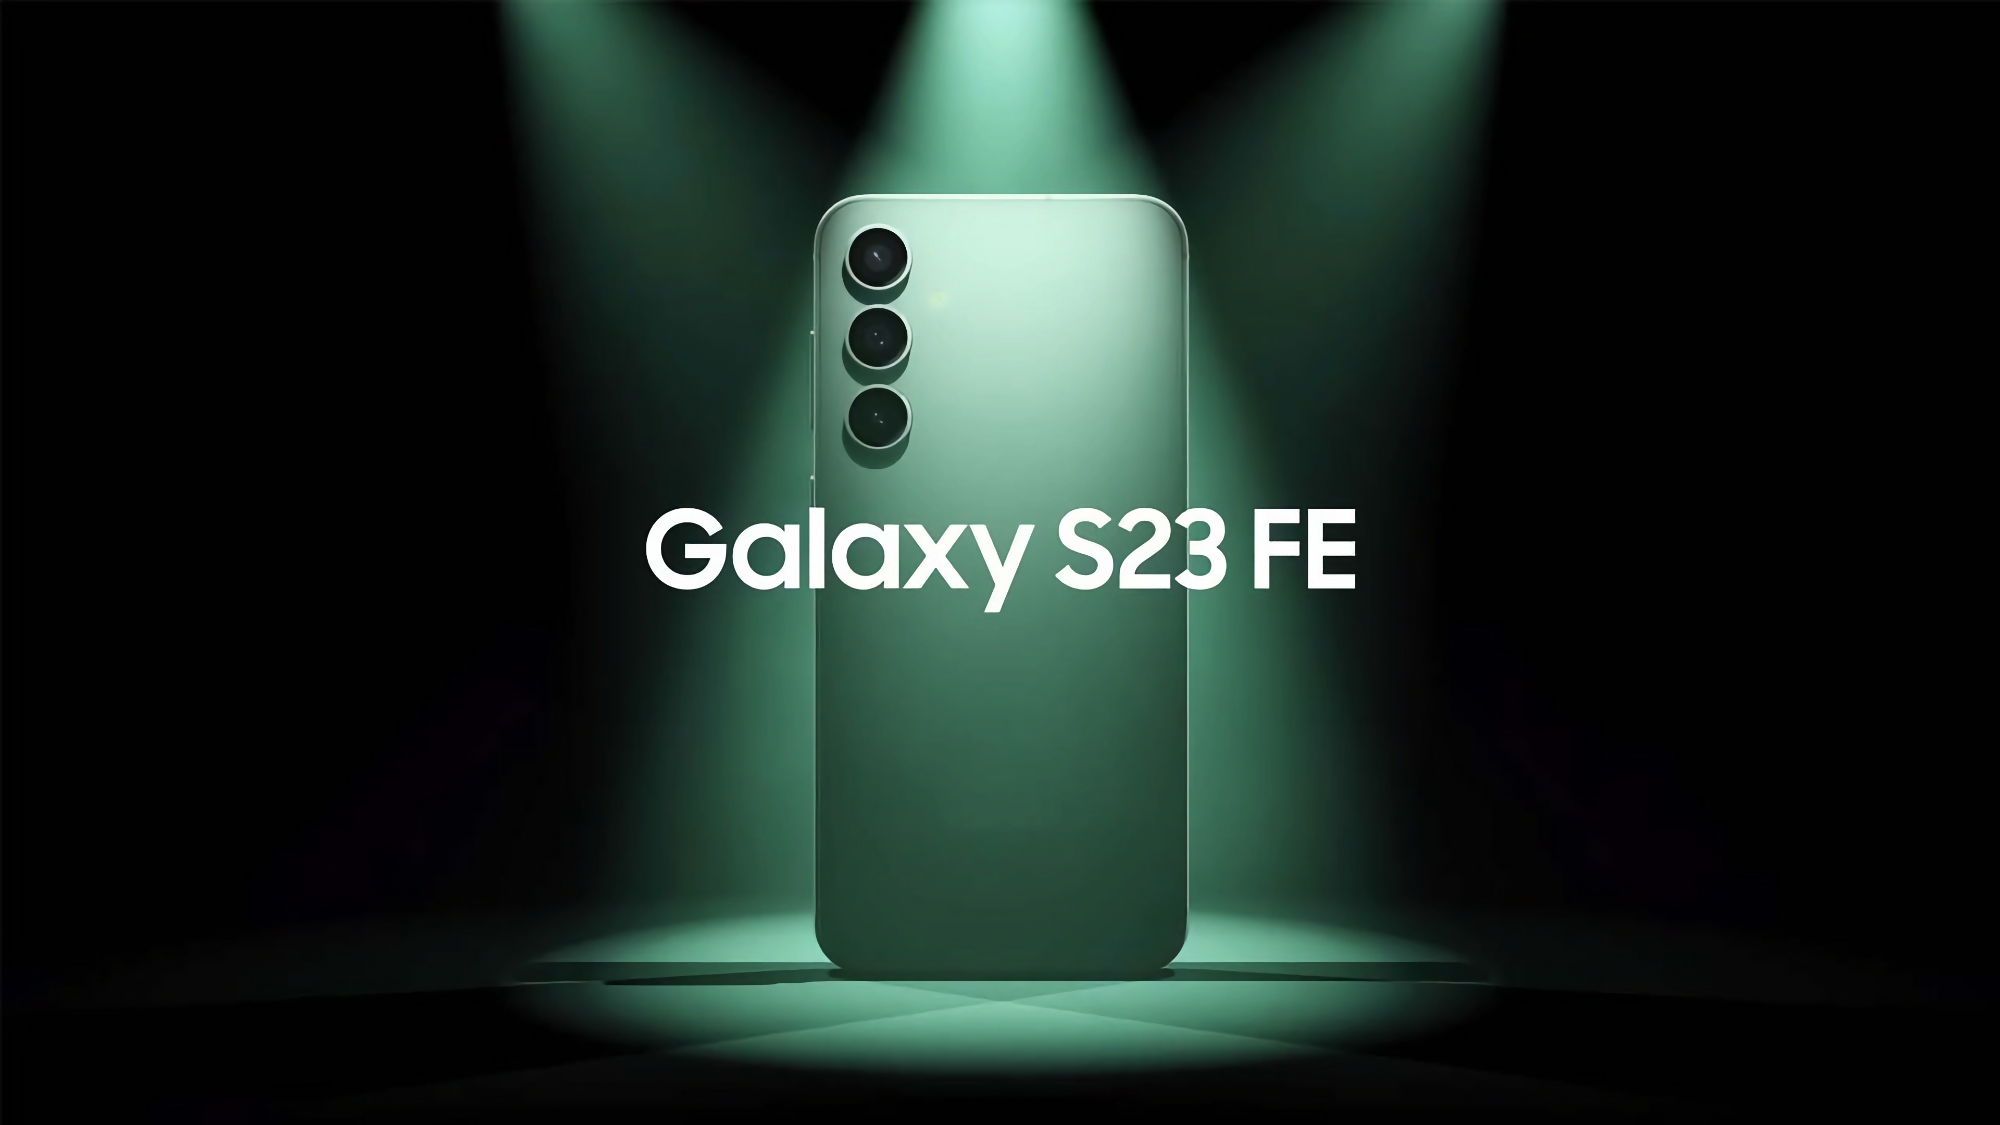 Oferta del día: Samsung Galaxy S23 FE en Amazon con un descuento de 100 dólares